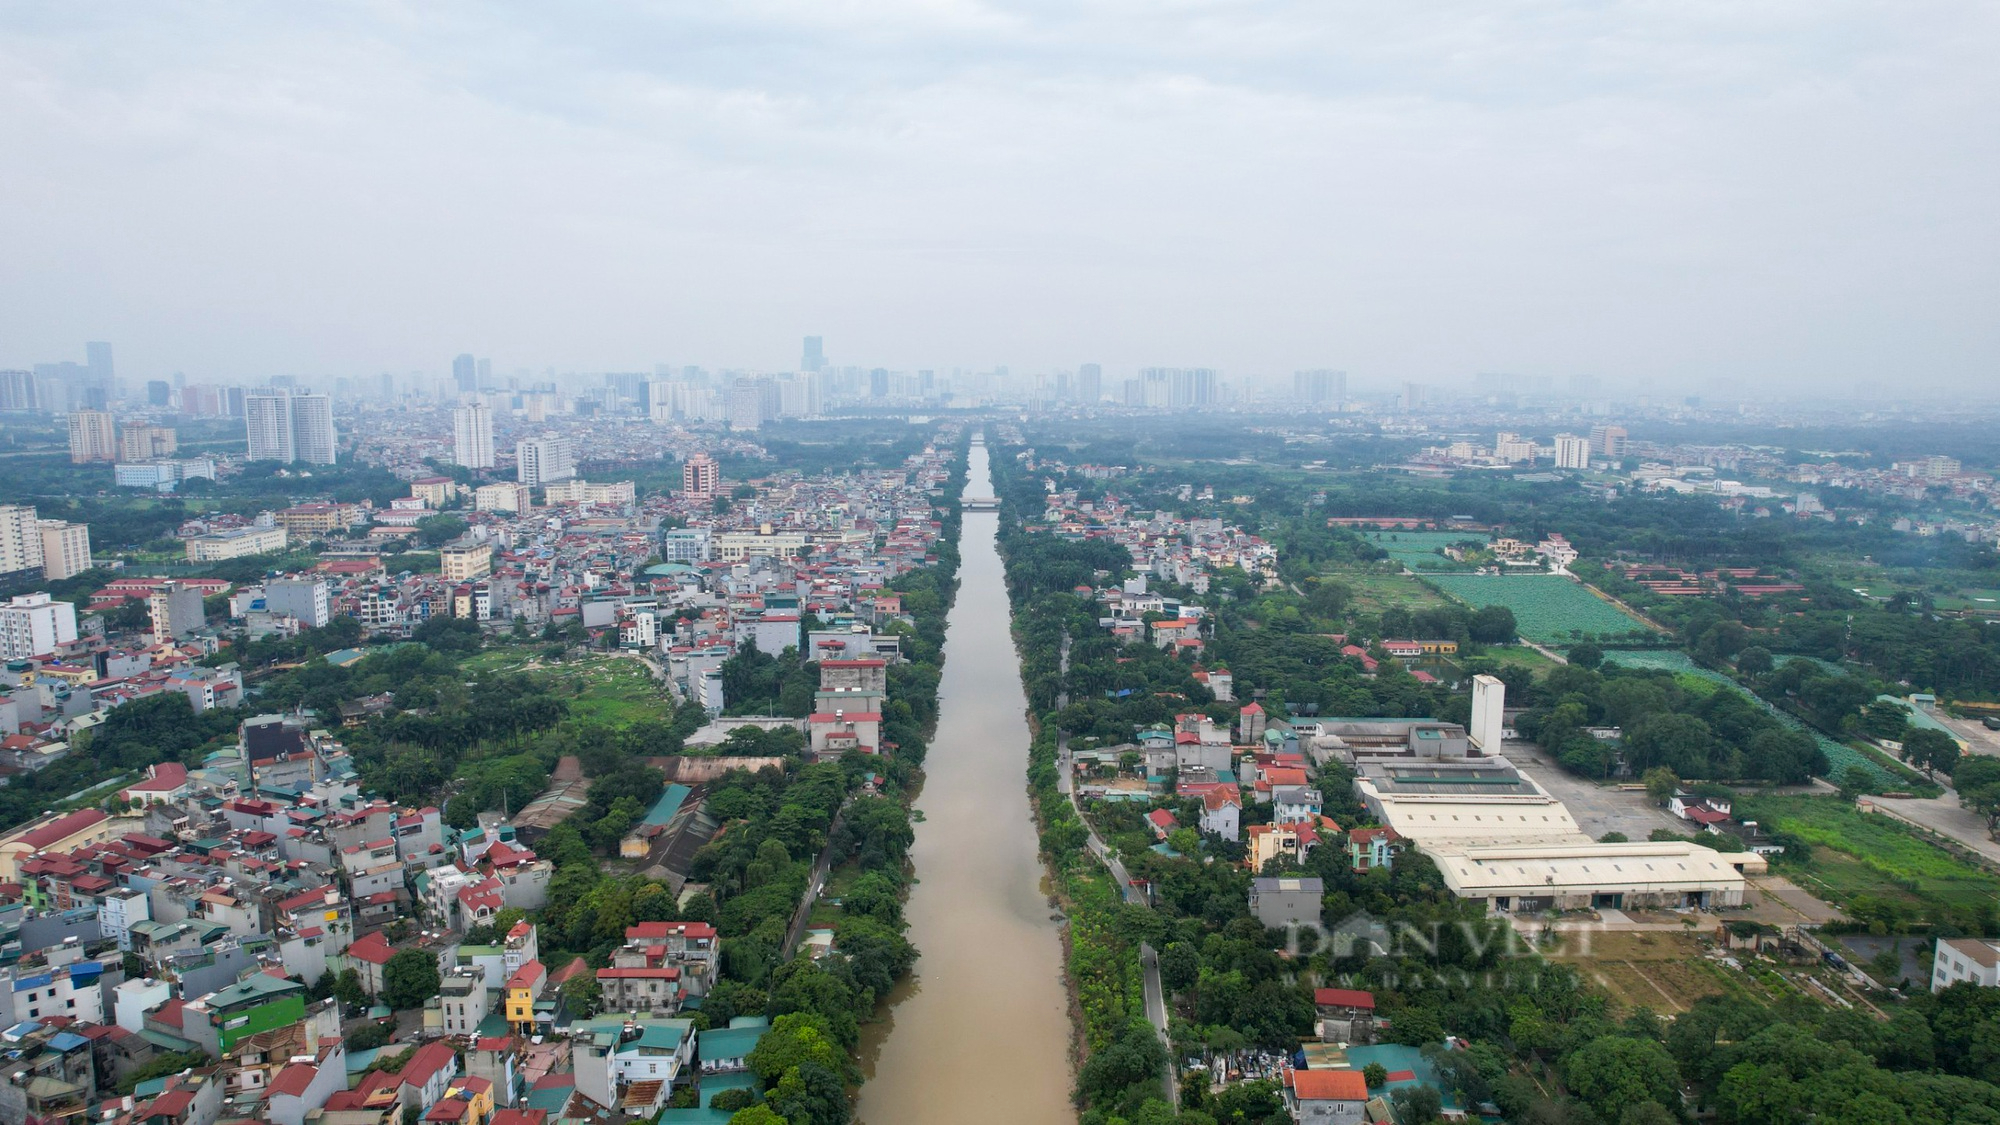 Cụm công trình thoát nước, chống ngập hơn 3.600 tỷ đồng tại Hà Nội vẫn ì ạch tiến độ - Ảnh 5.